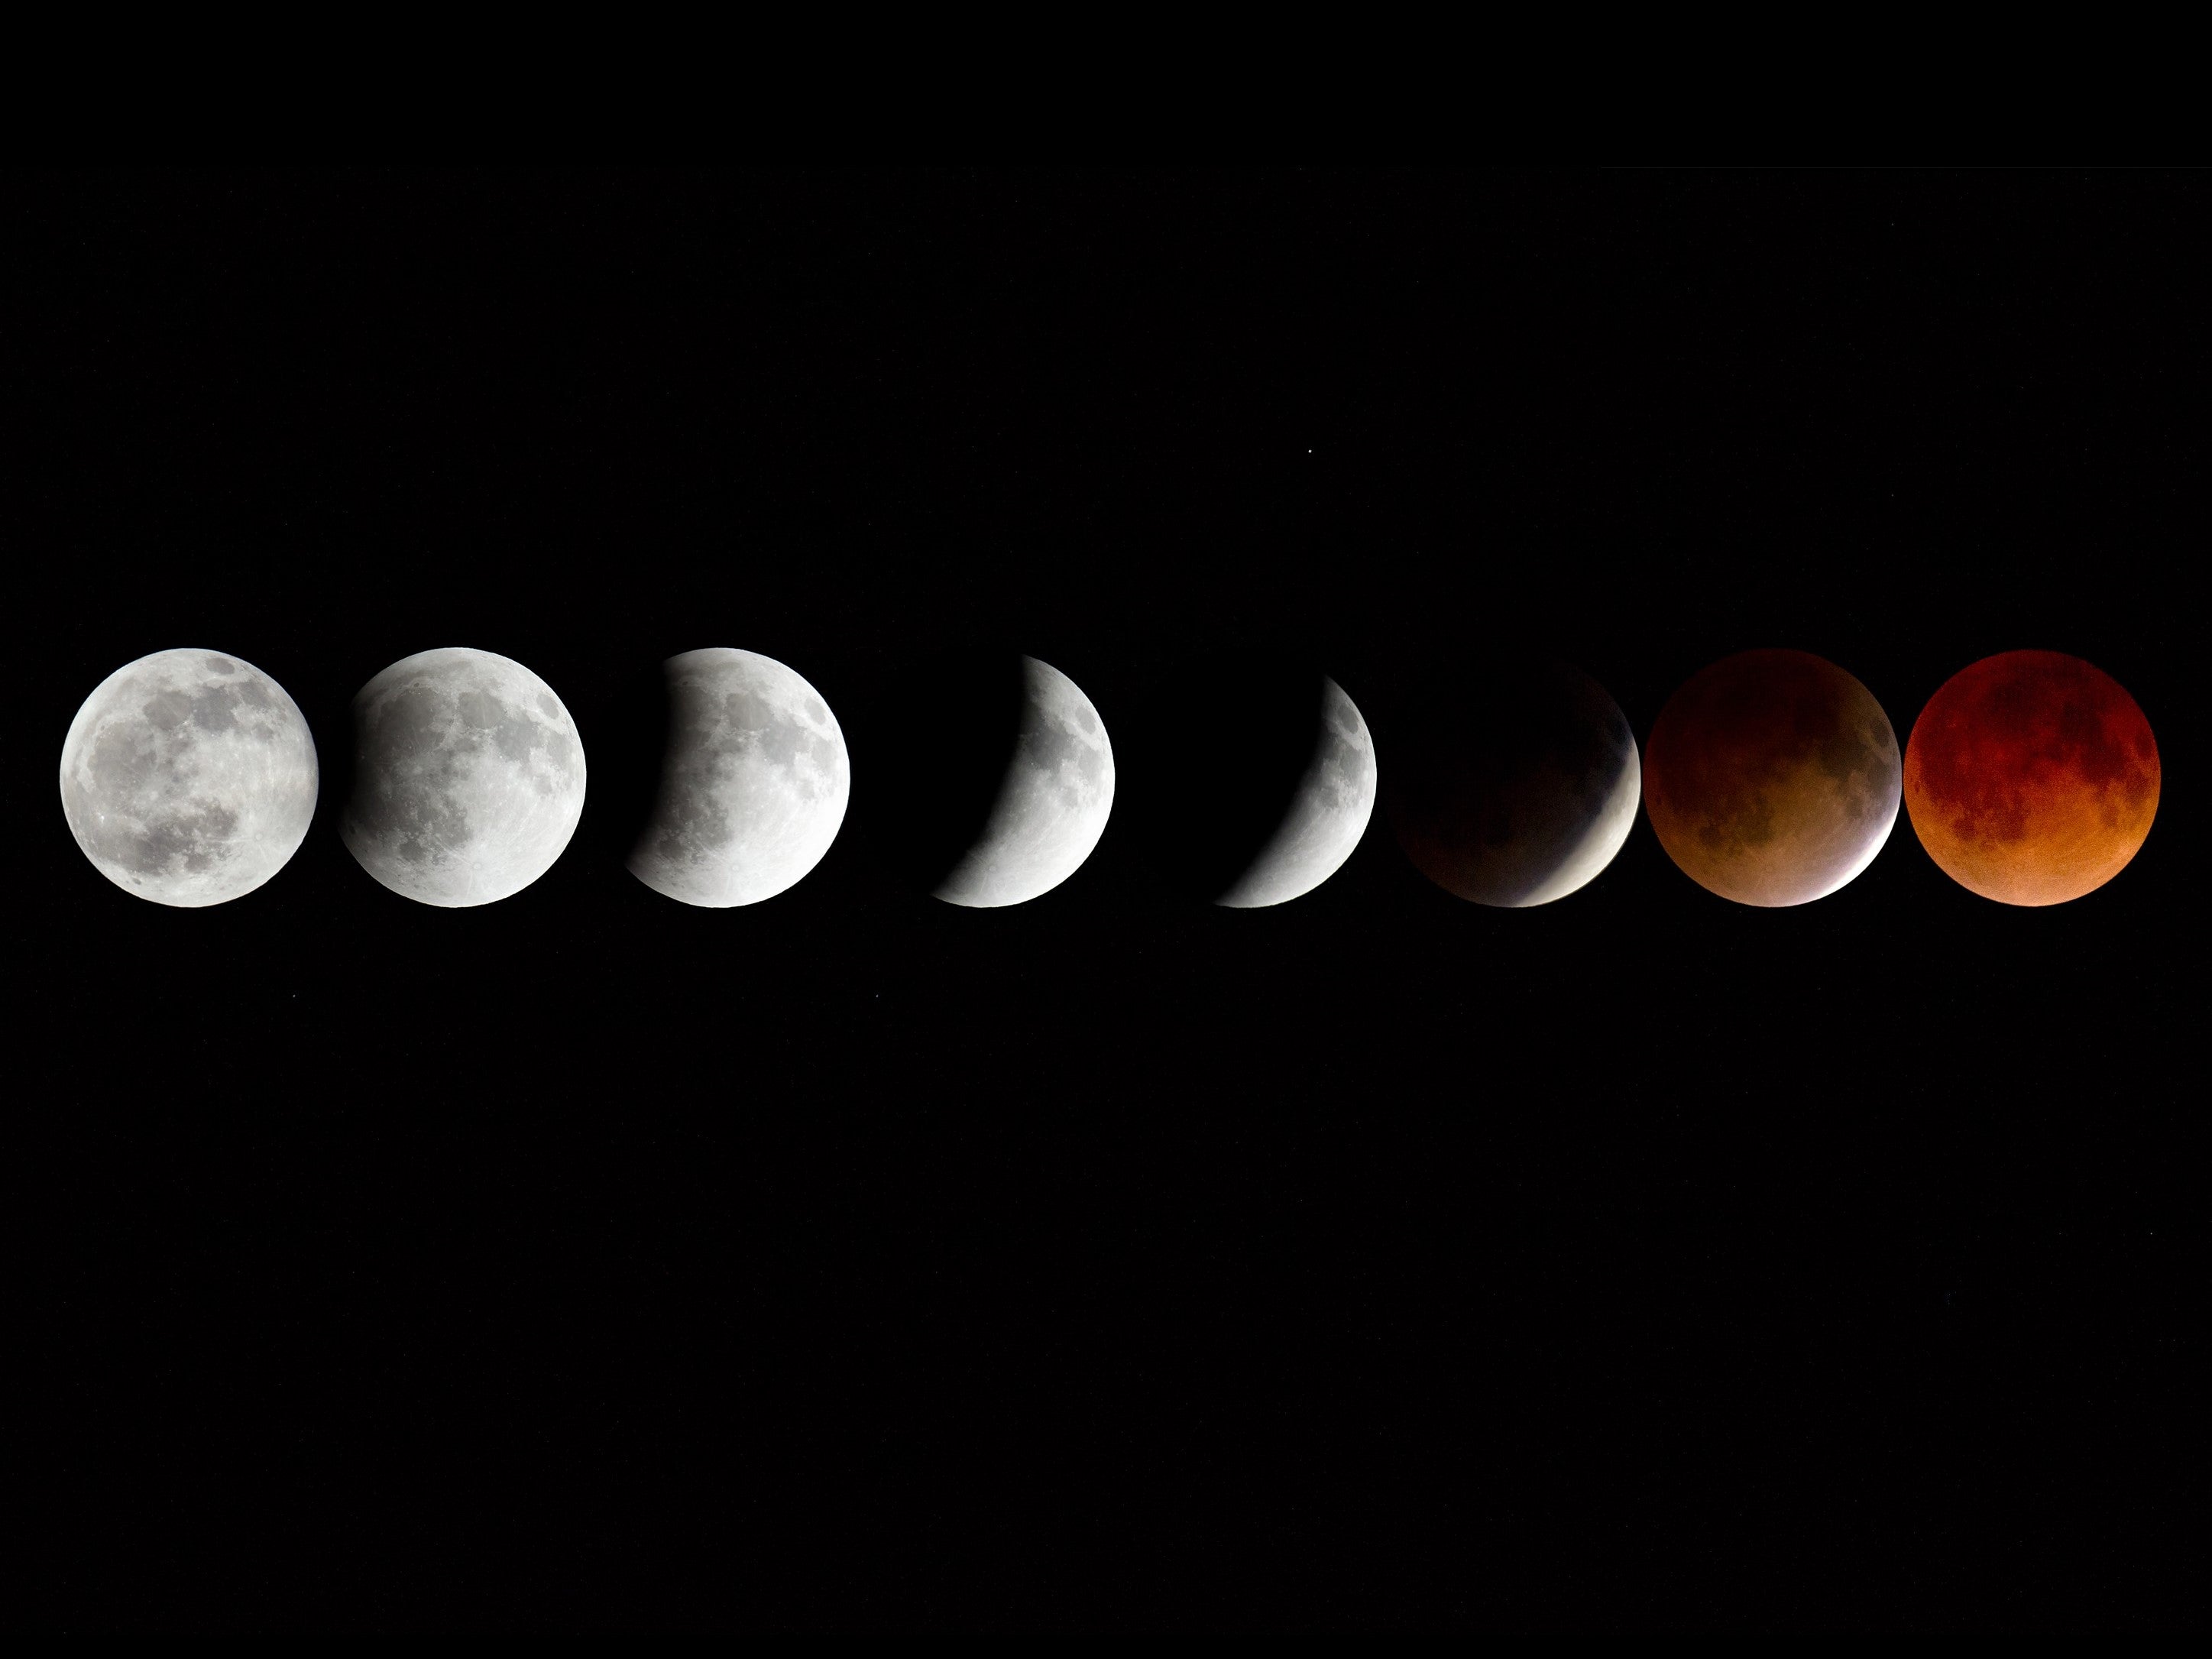 El eclipse lunar casi total se llevará a cabo el 19 de noviembre y será el más largo en más de 500 años